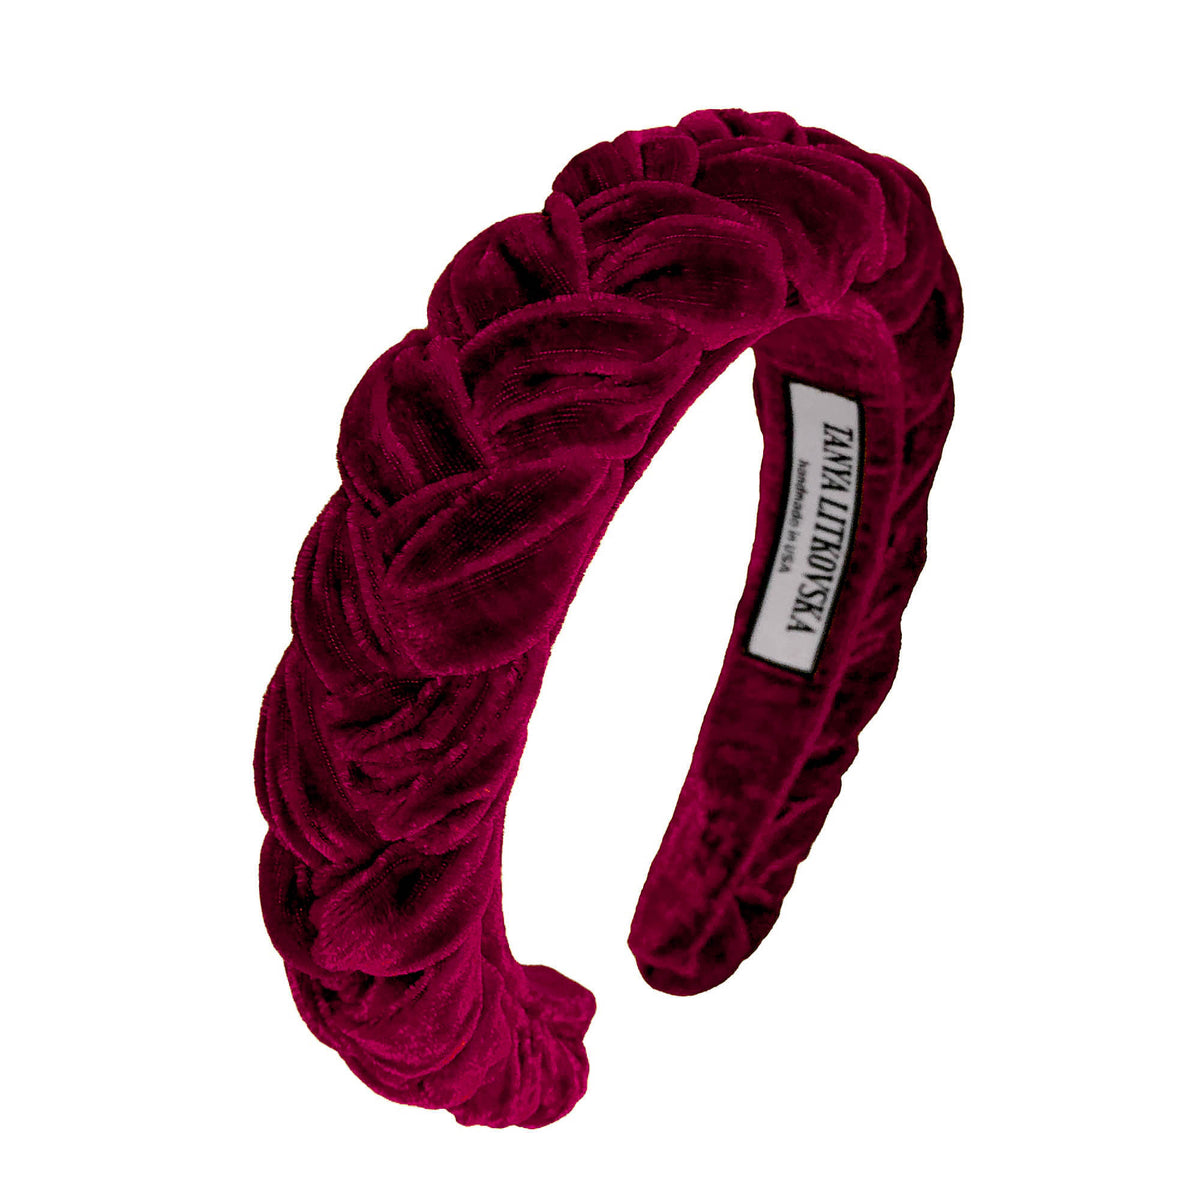 http://tanyalitkovska.com/cdn/shop/products/velvet-headband-prom-hair-accessories-for-women-red-headband-tanya_litkovska-1_1200x1200.jpg?v=1553215836